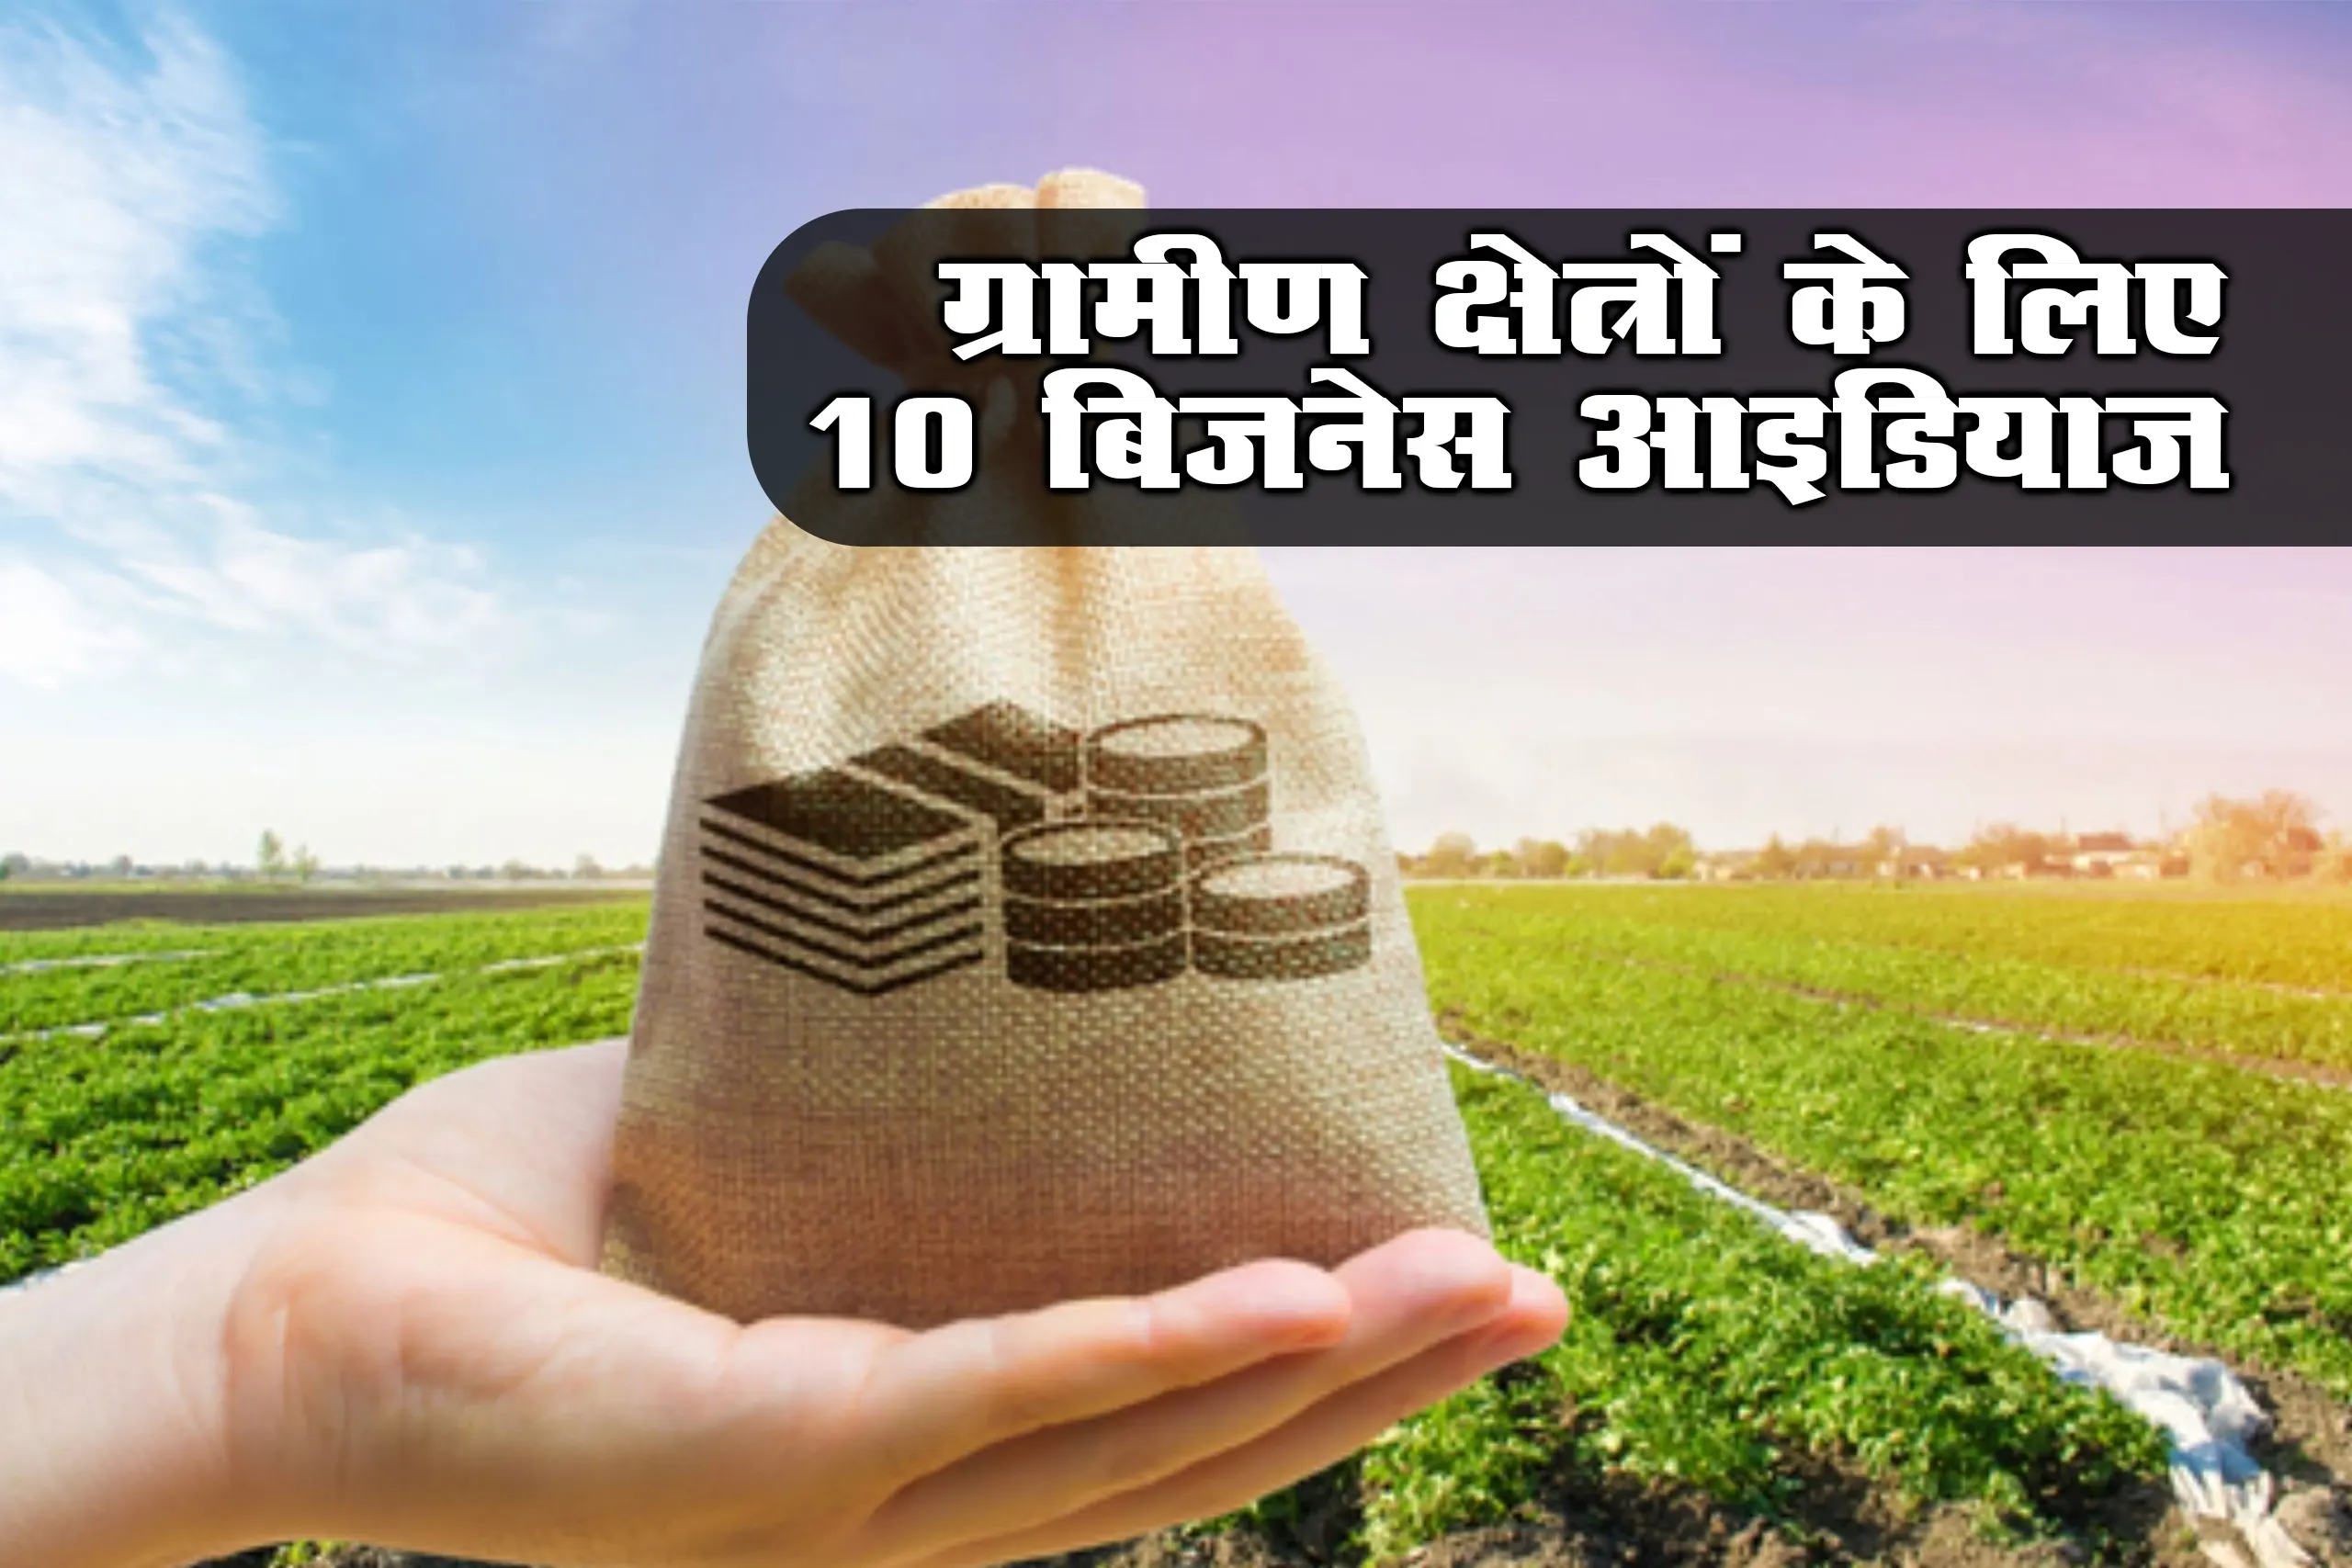 ग्रामीण क्षेत्रों के लिए 10 बिजनेस आइडियाज - 10 Best Business Ideas For Rural Areas in Hindi